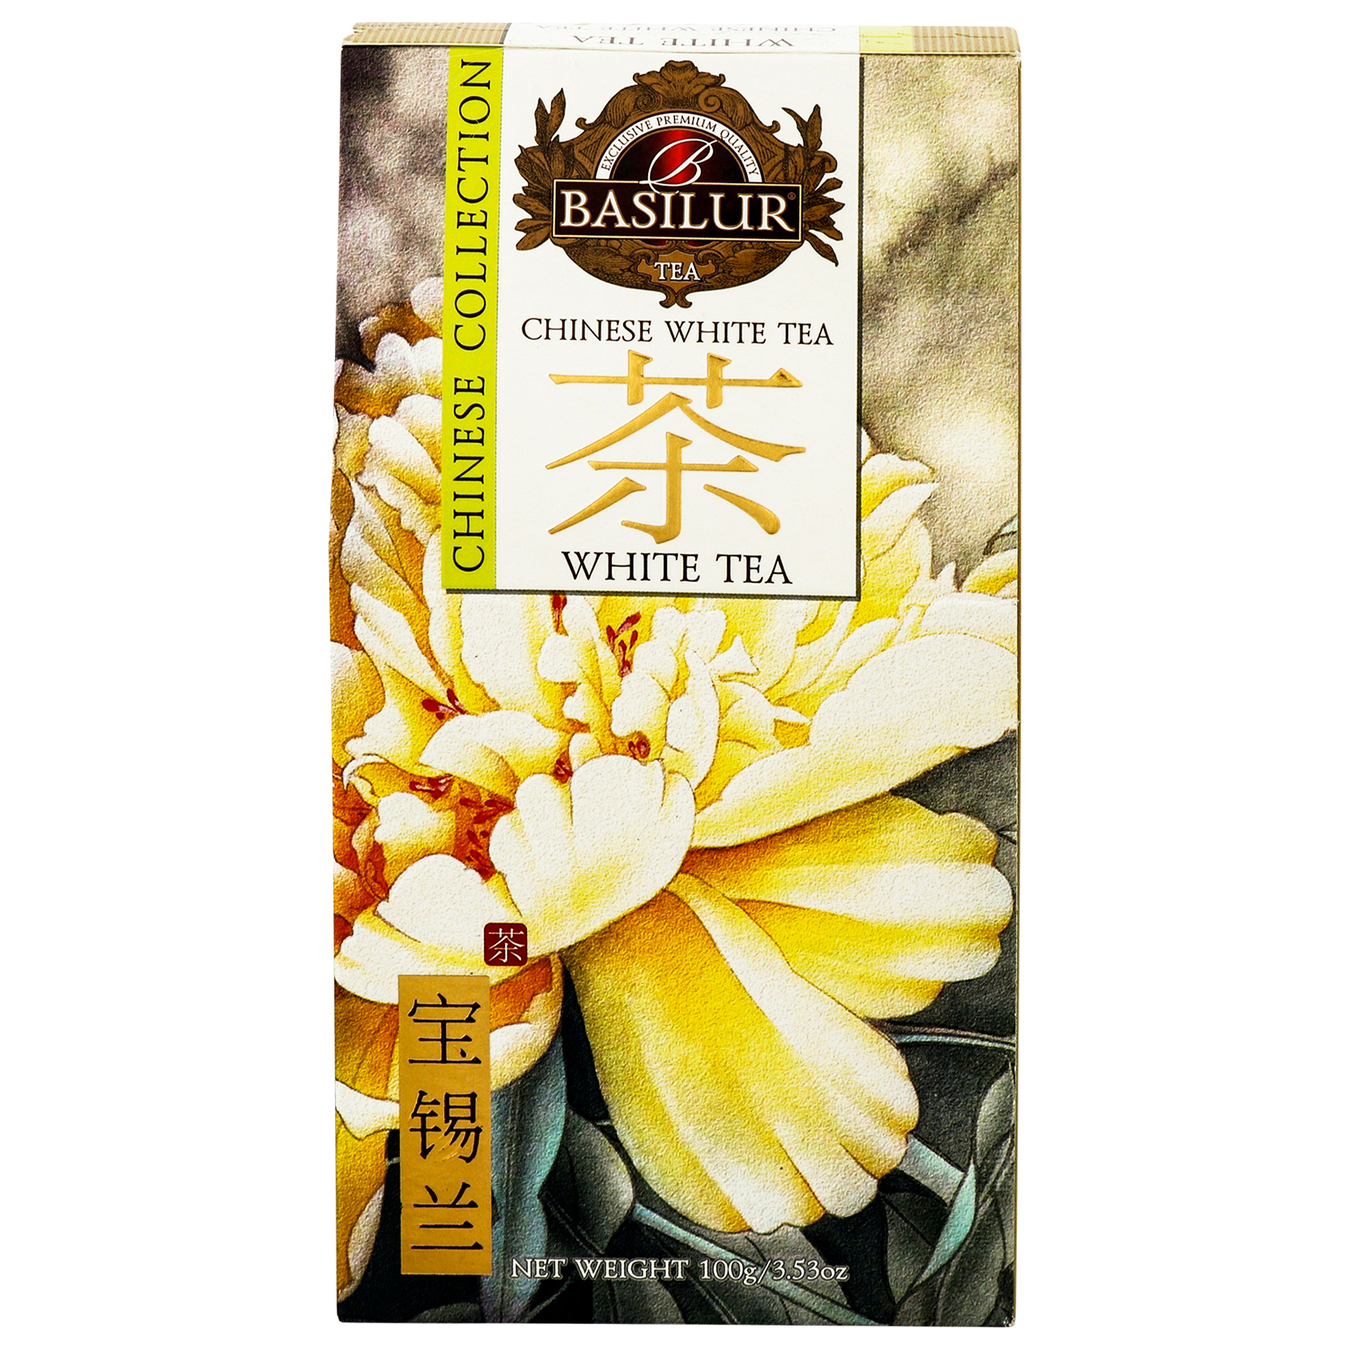 White tea Basilur Chinese collection White tea 100g